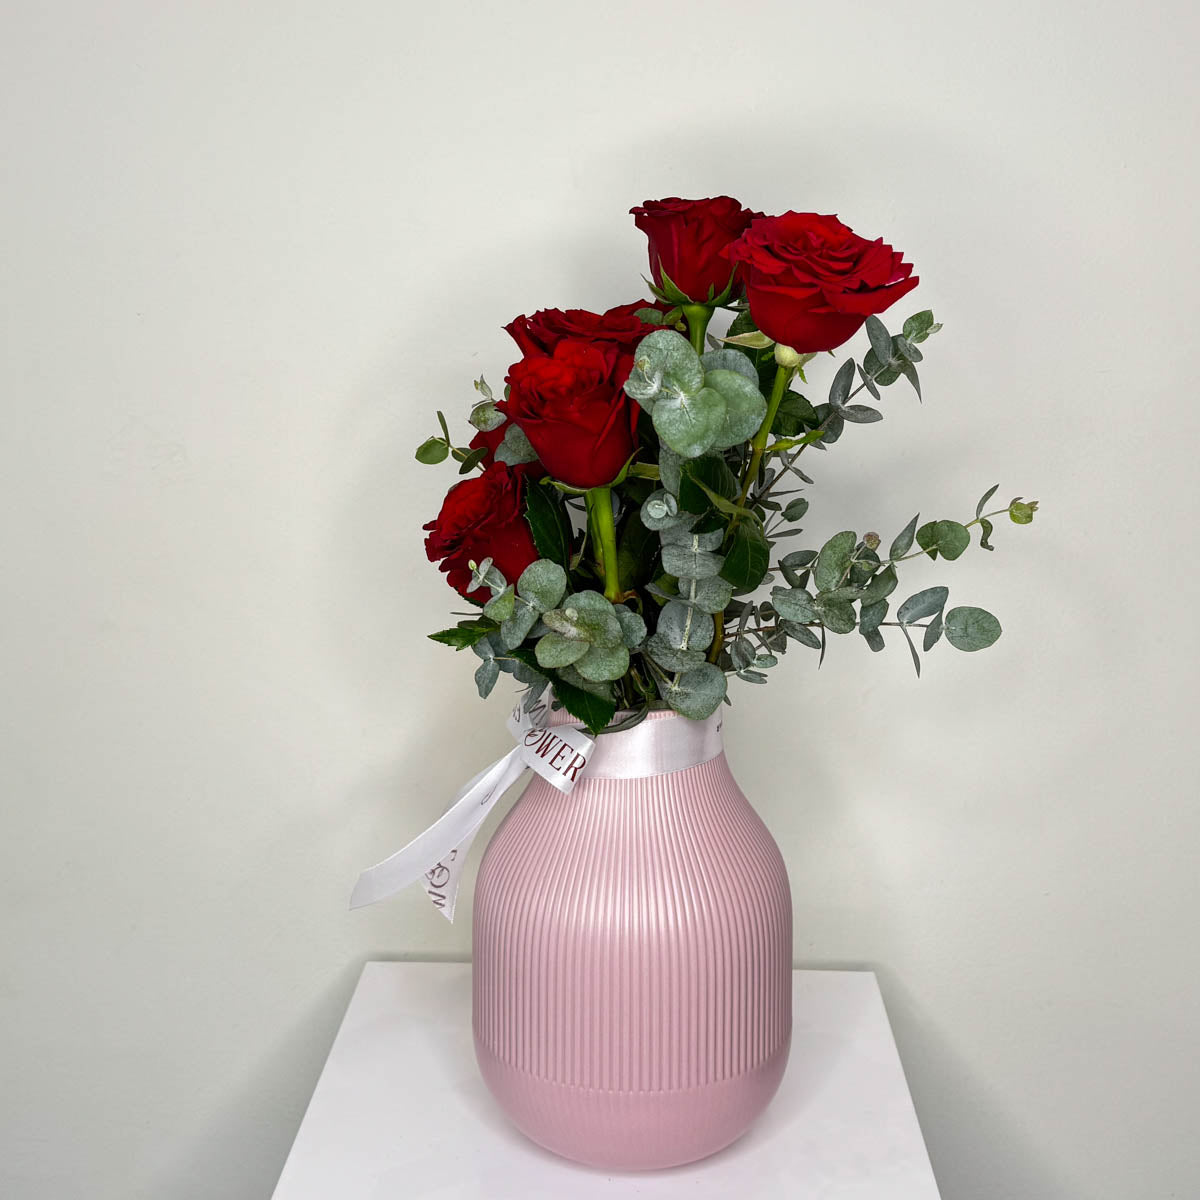 Ceramic Vase With Roses